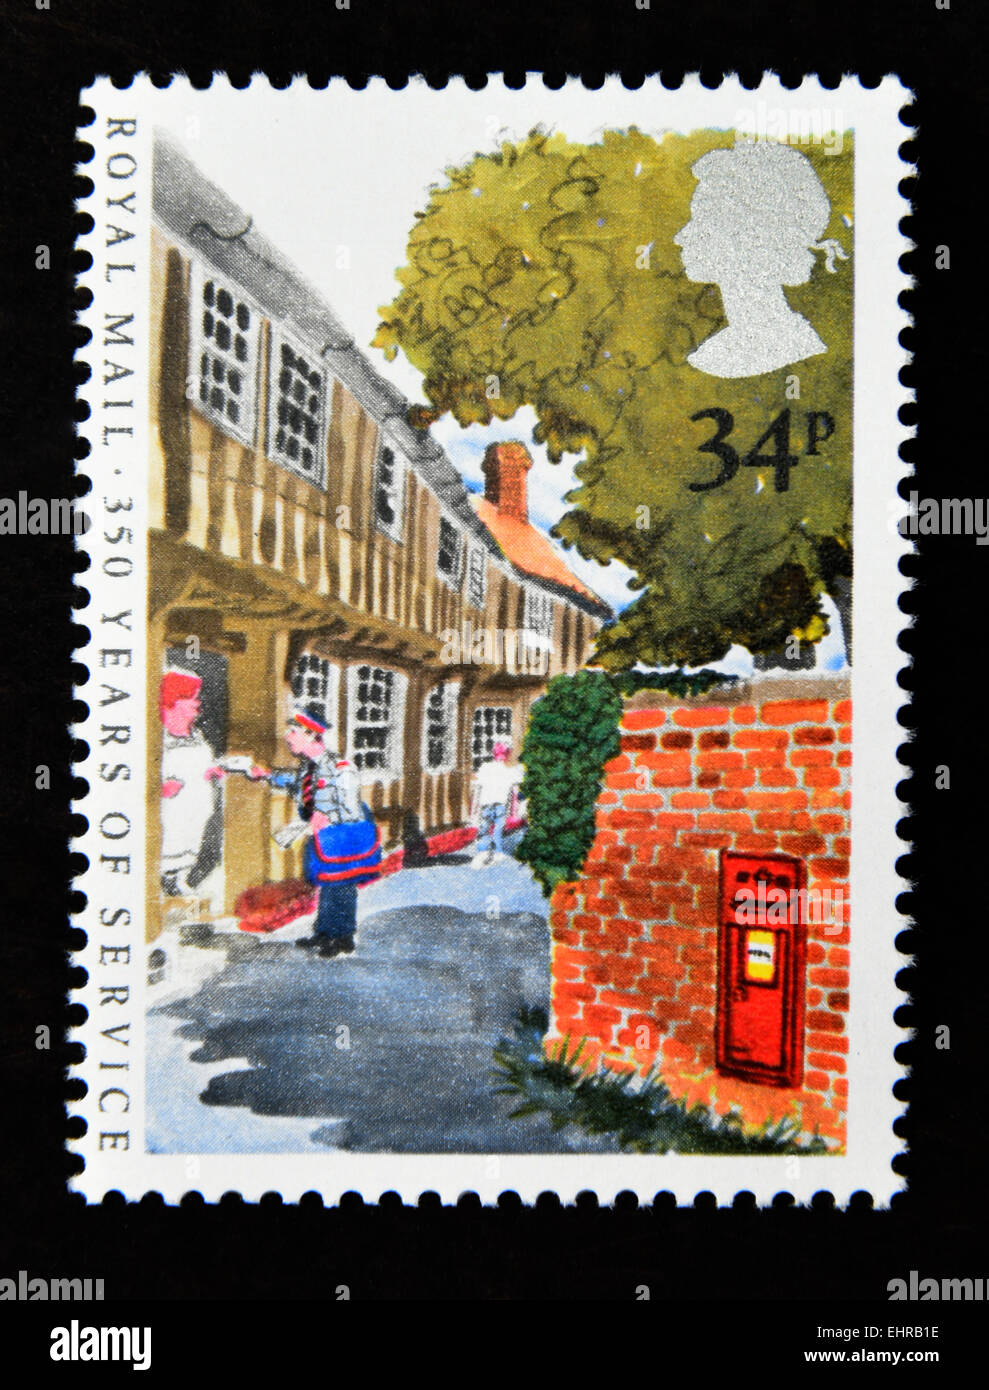 Timbre-poste. La Grande-Bretagne. La reine Elizabeth II. 1985. 350 ans de Royal Mail Service public postal. 34p. Banque D'Images